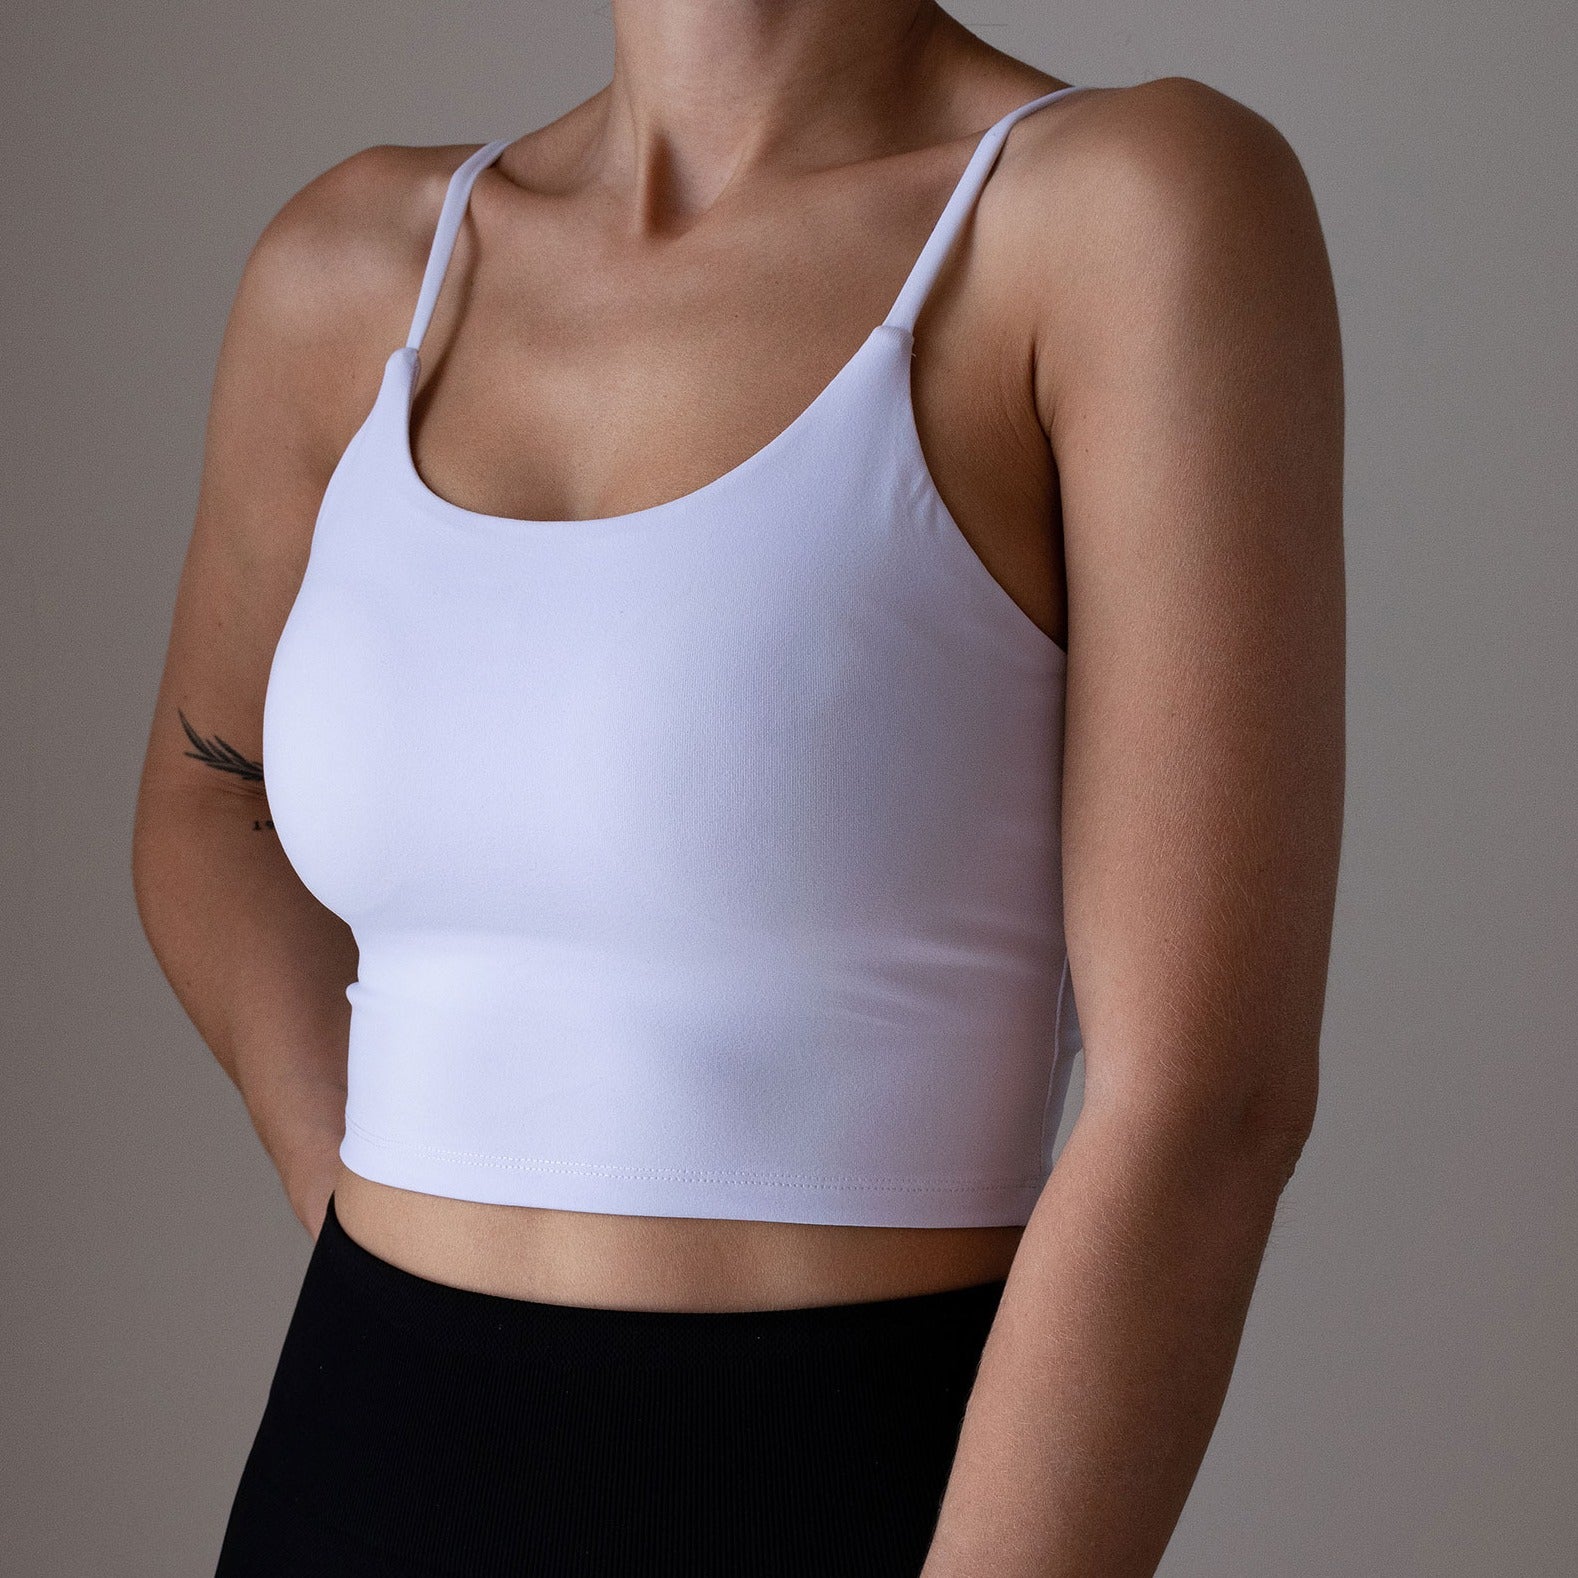 White Padded Yoga Crop Top – AMRAP Activewear